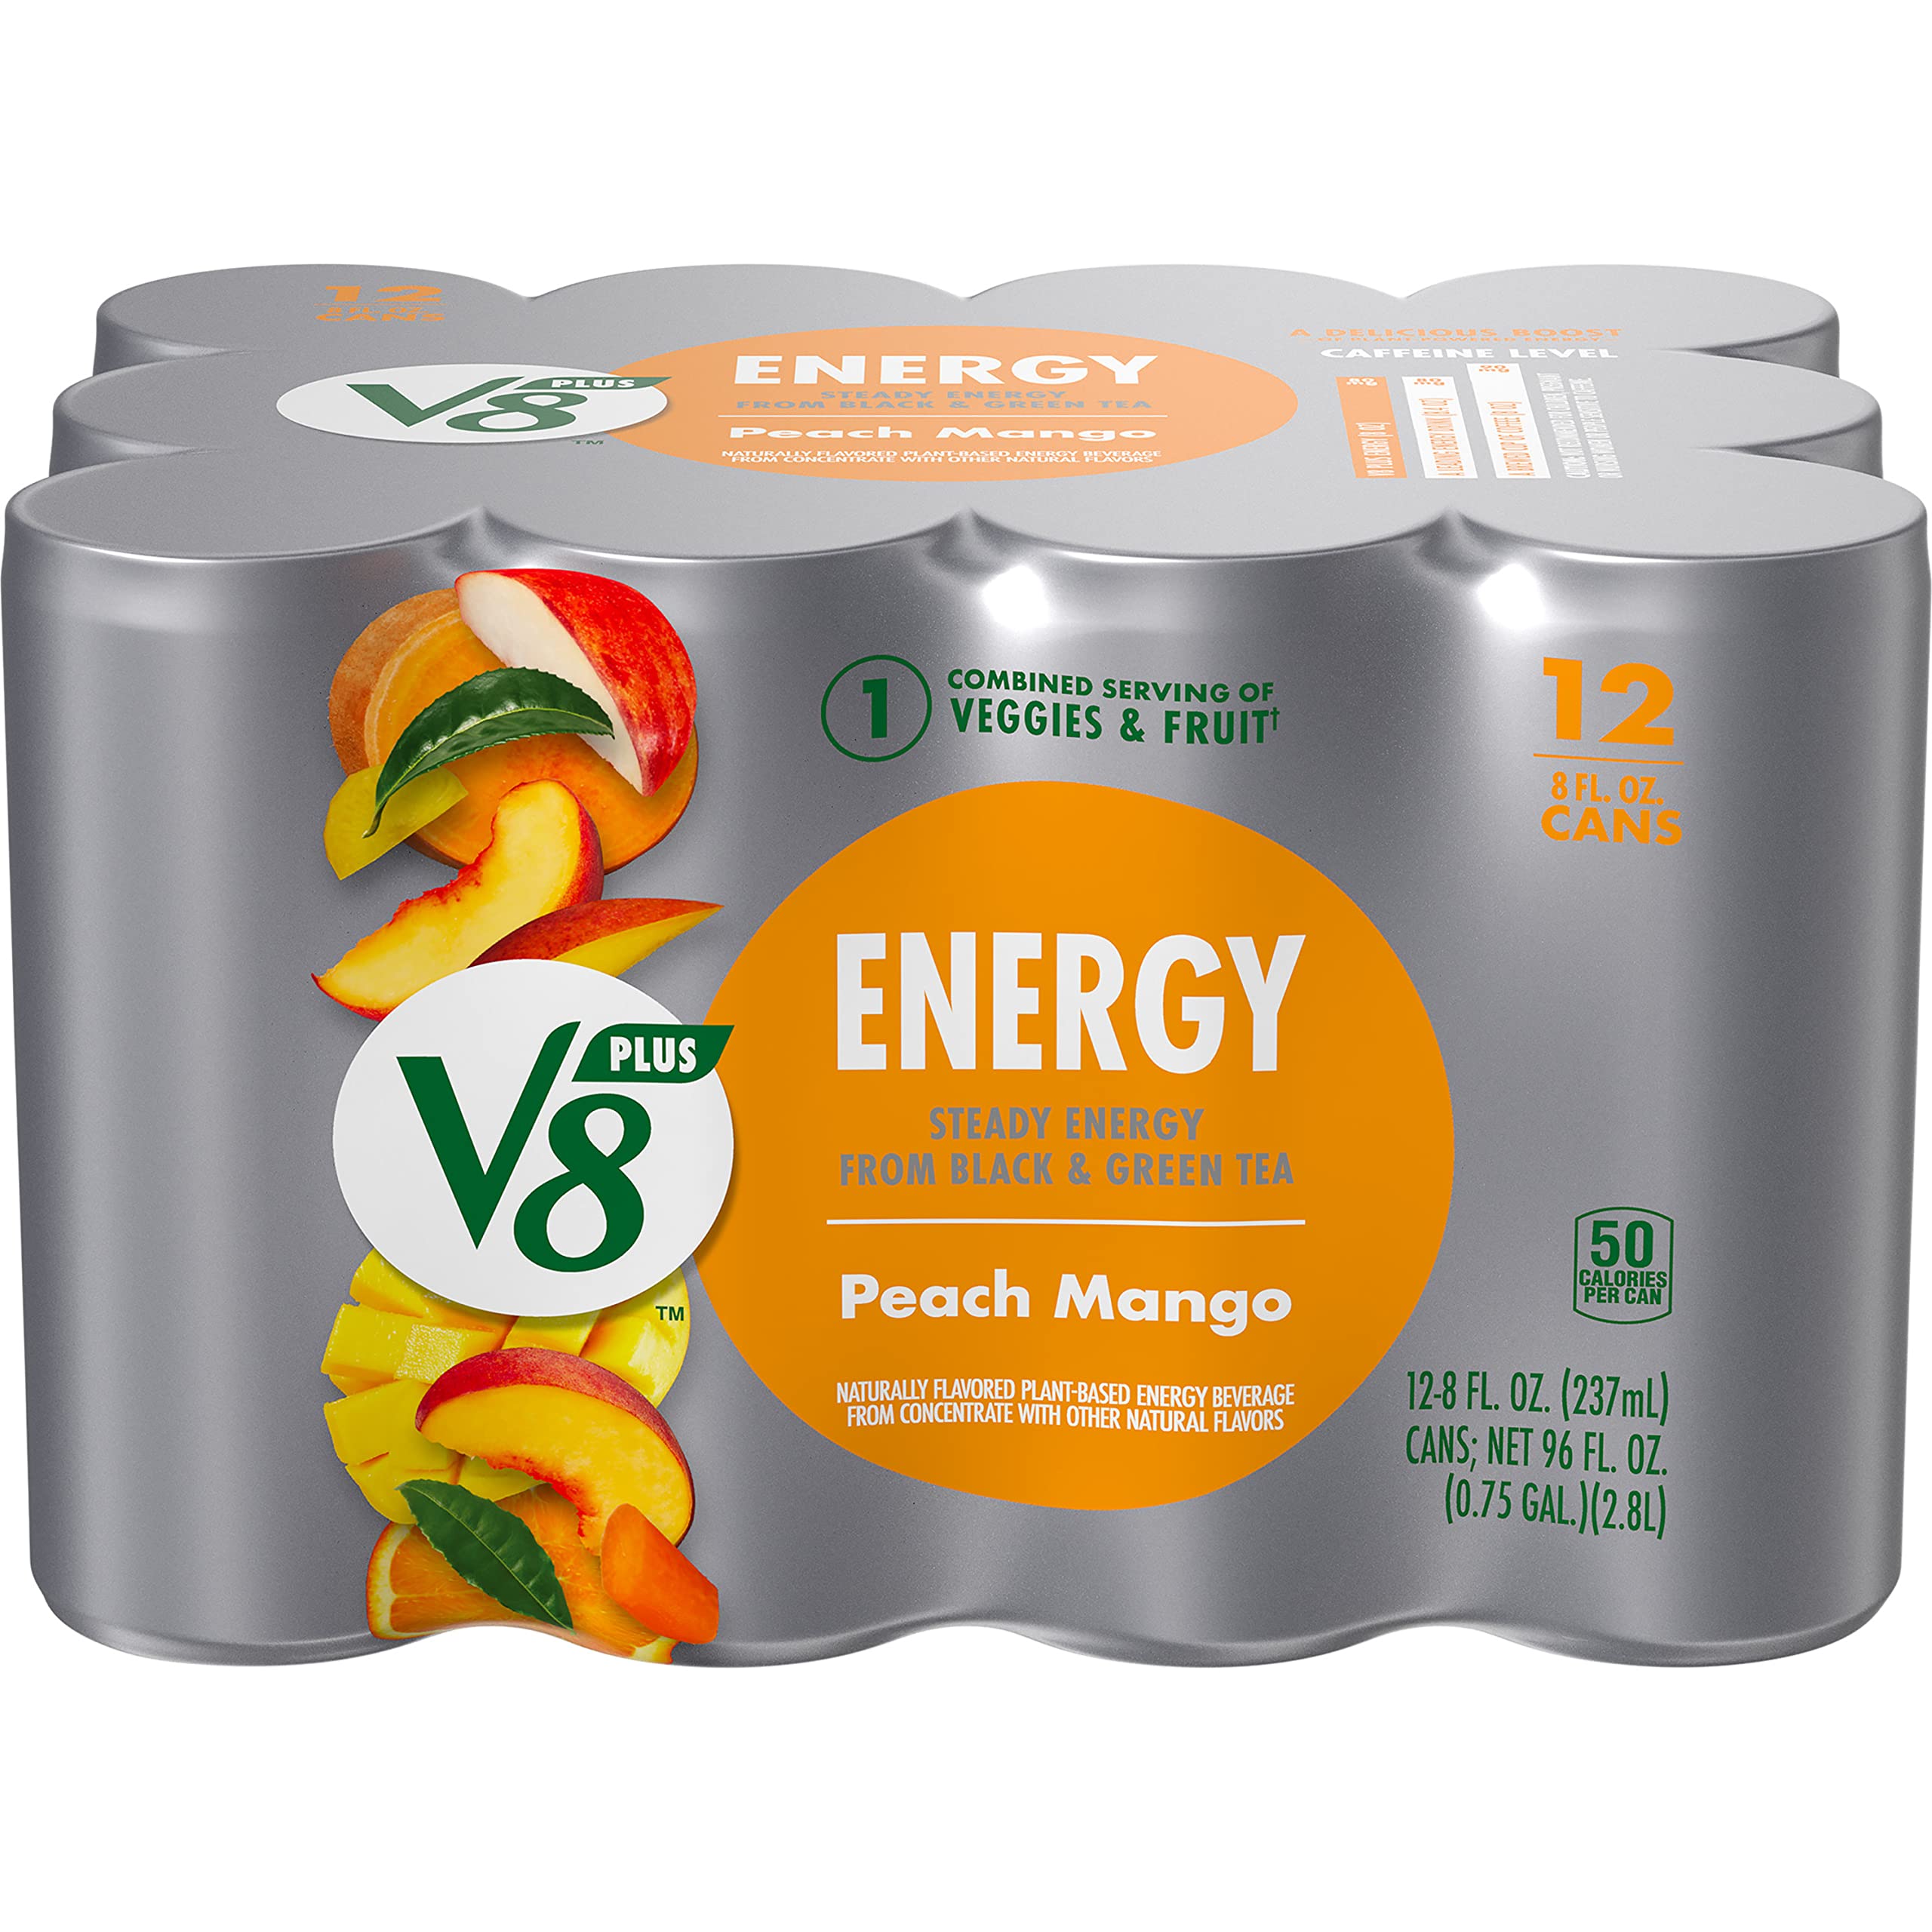 12-Pack 8-Oz V8 +ENERGY Pomegranate Blueberry Energy Drink (Peach Mango or Pomegranate Blueberry) $6.80 + Free Shipping w/ Prime or on $35+